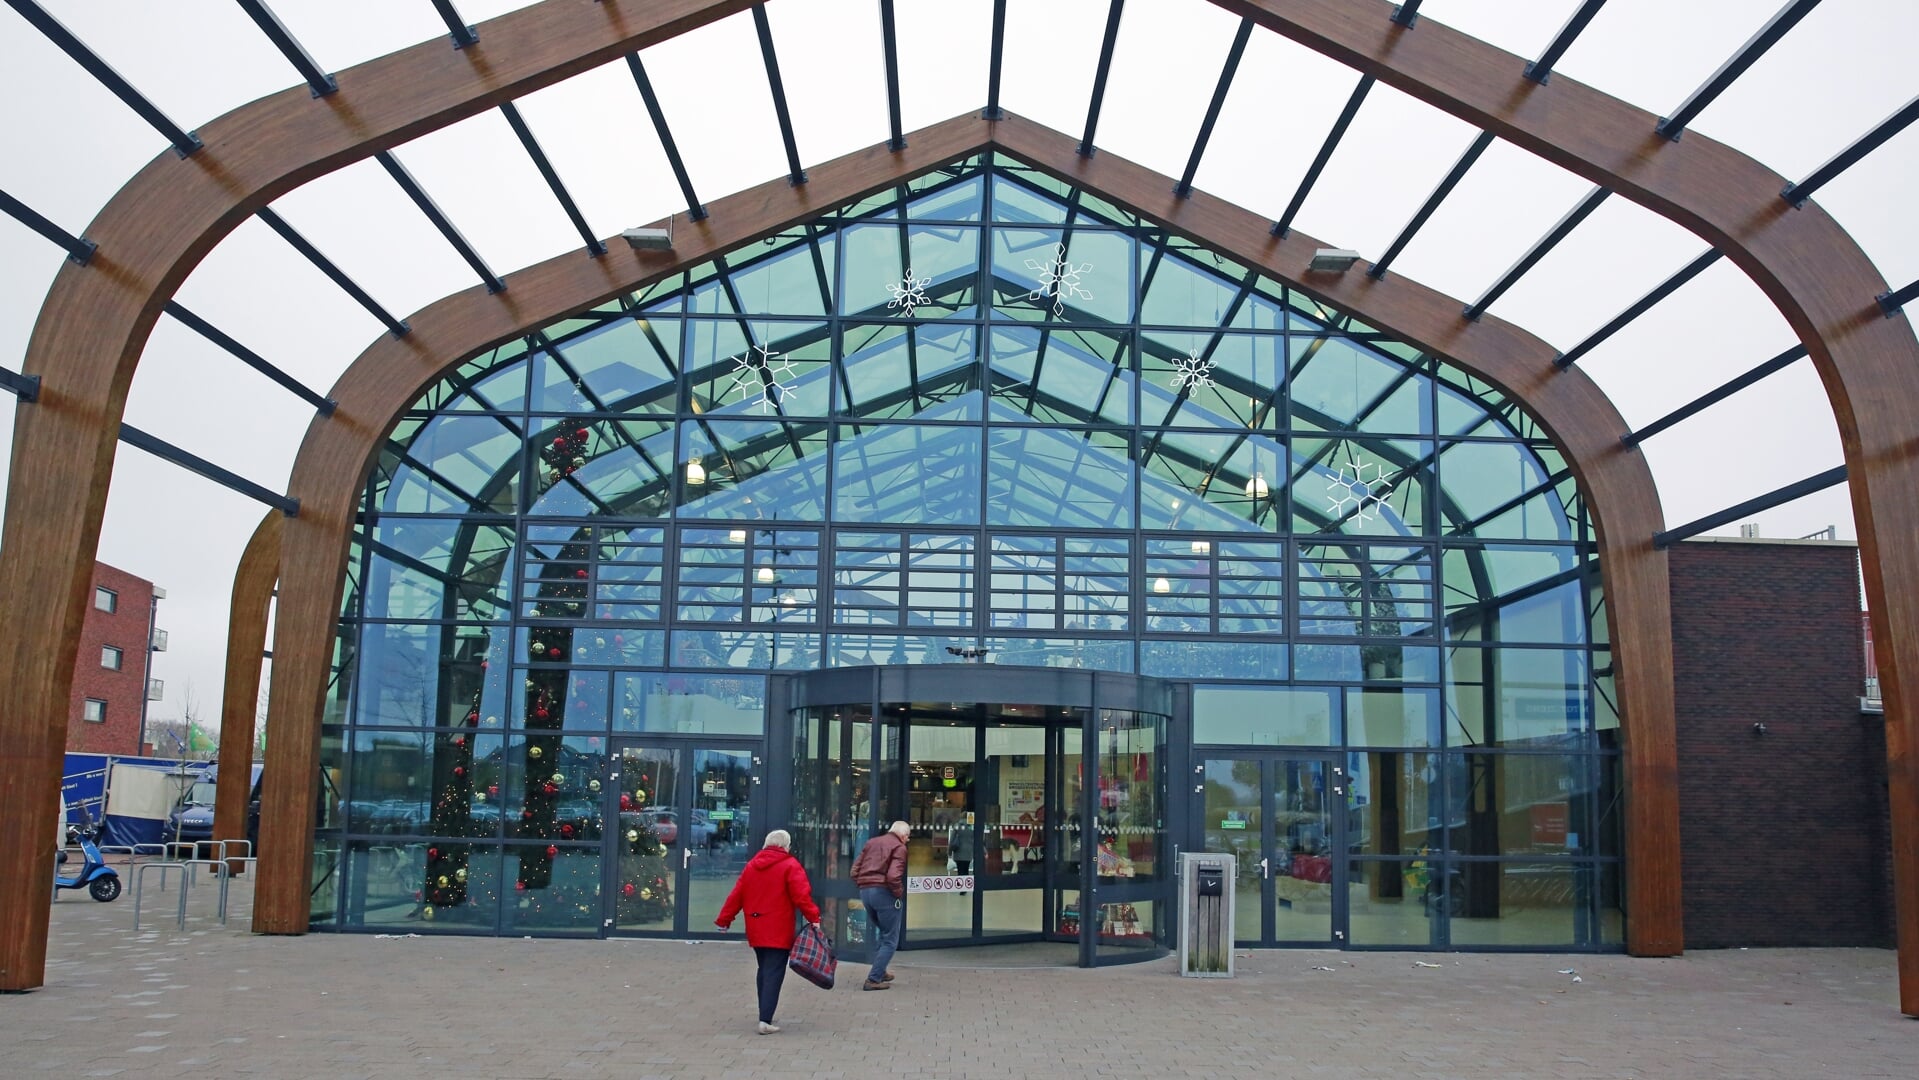 Winkelcentrum Broekerveiling.